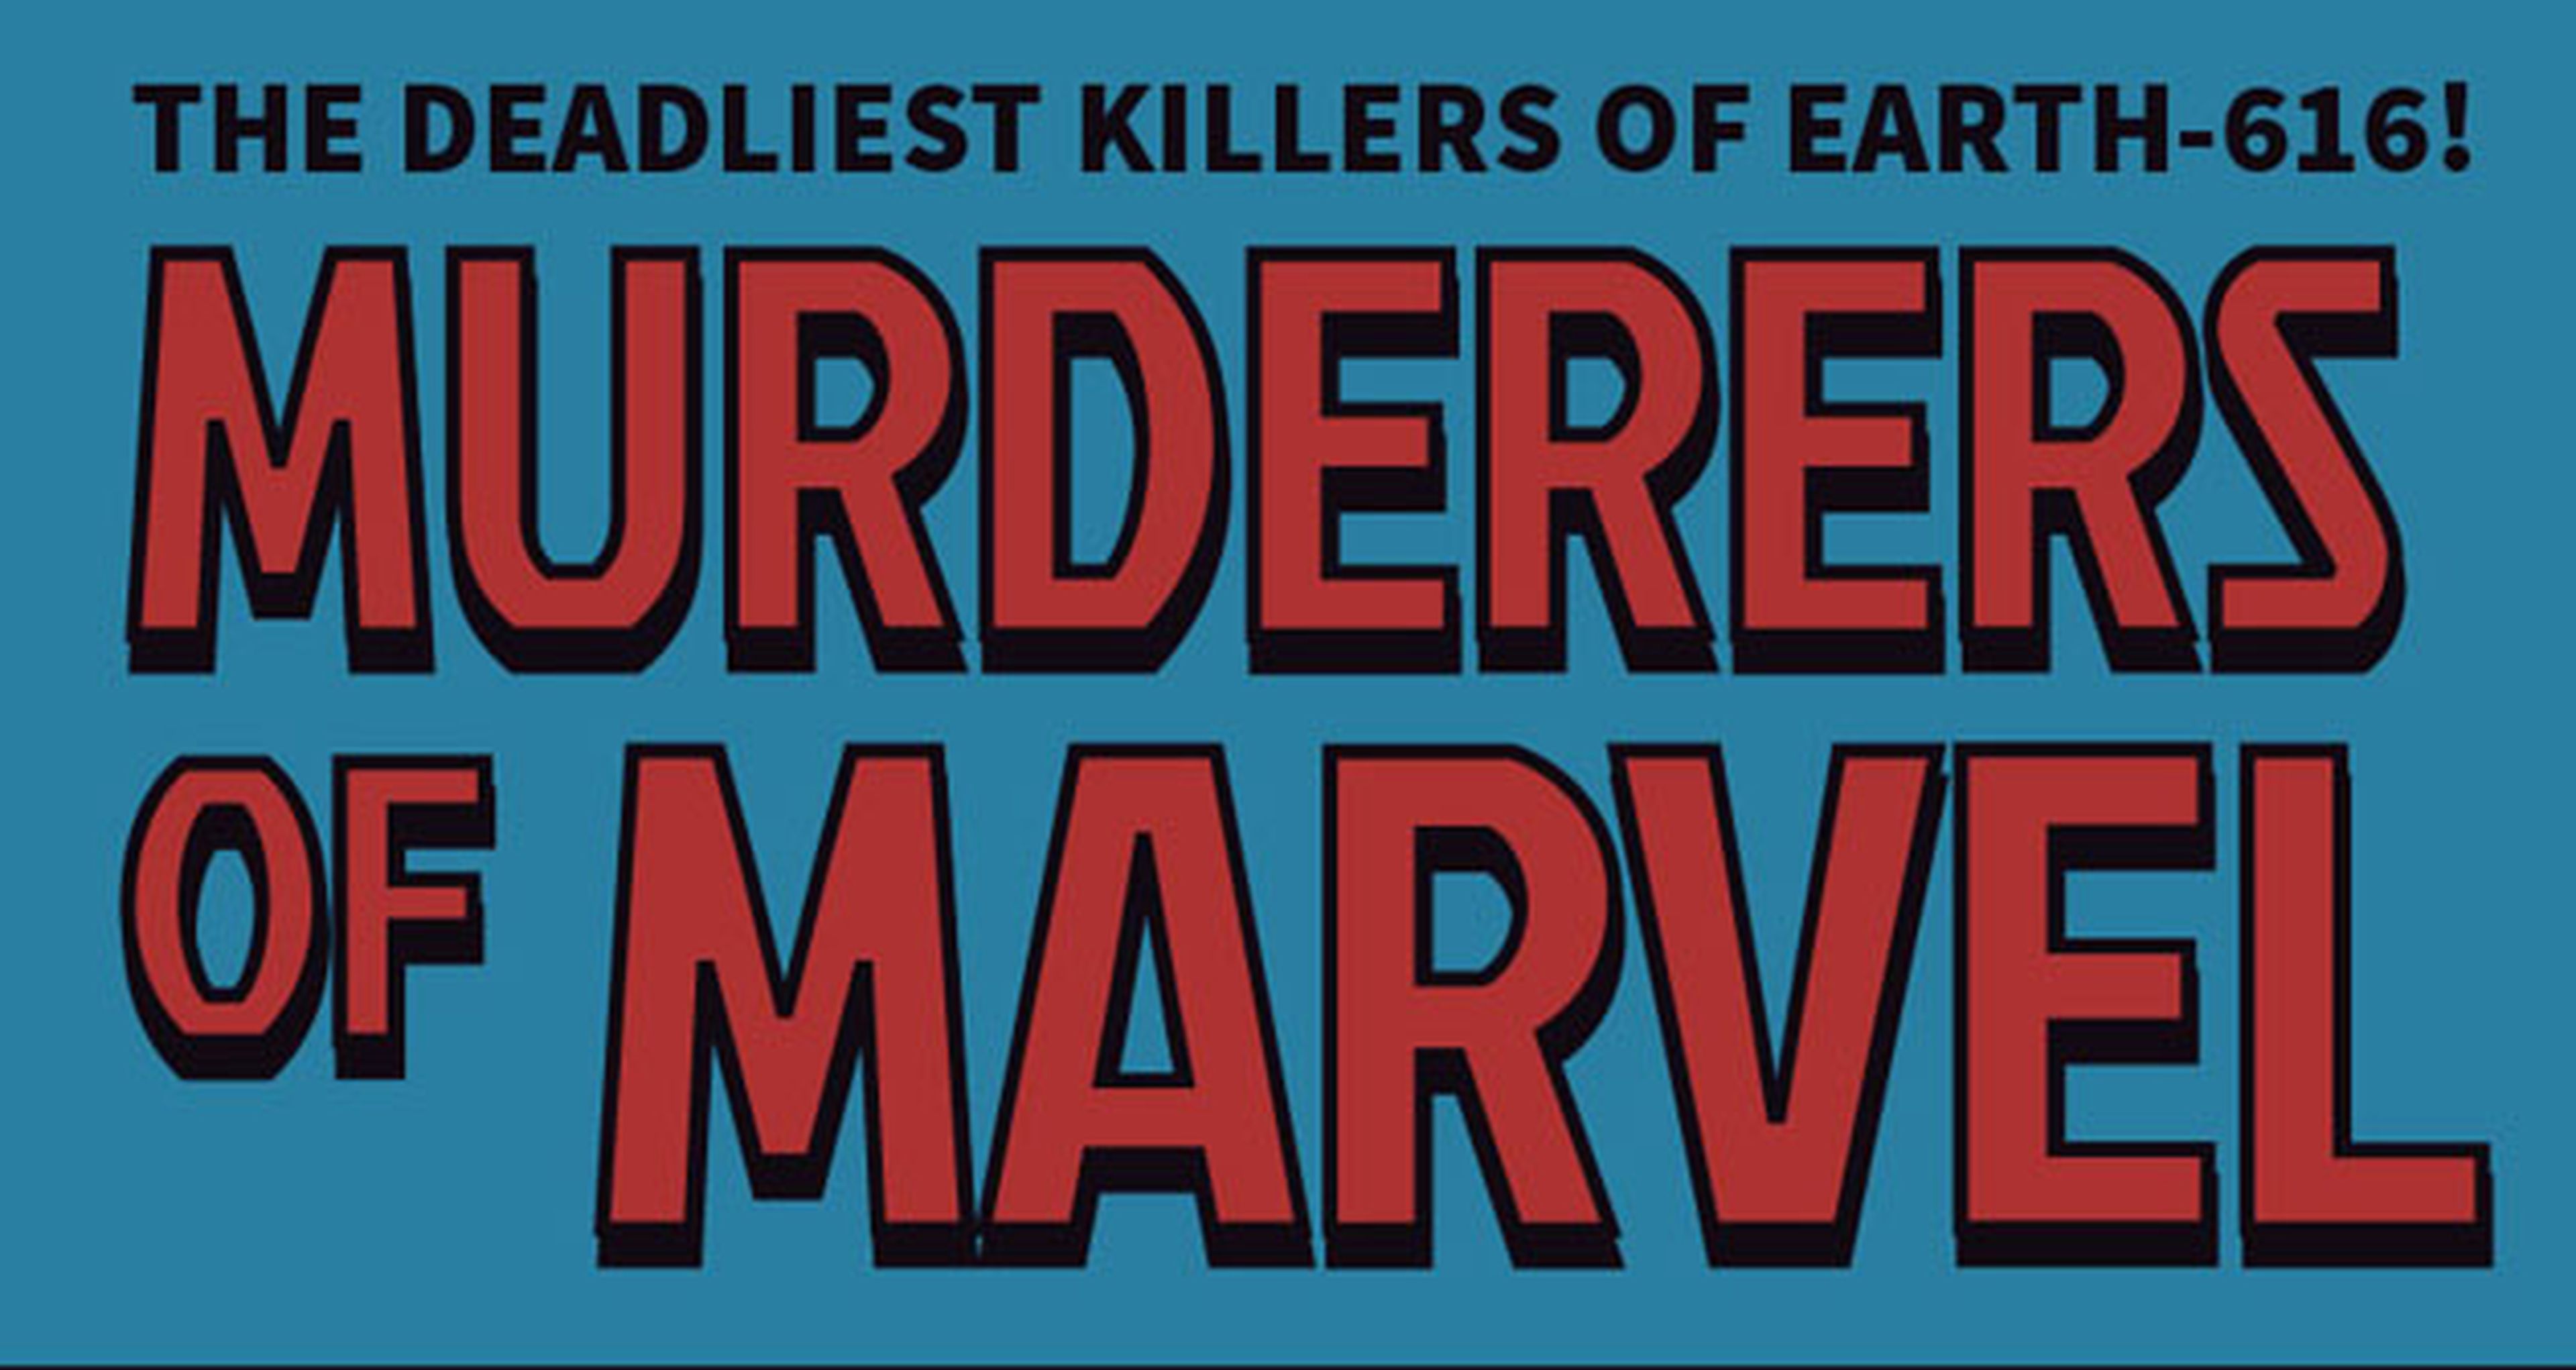 Infografía Marvel: ¿Quién ha matado a más gente en el Universo Marvel?